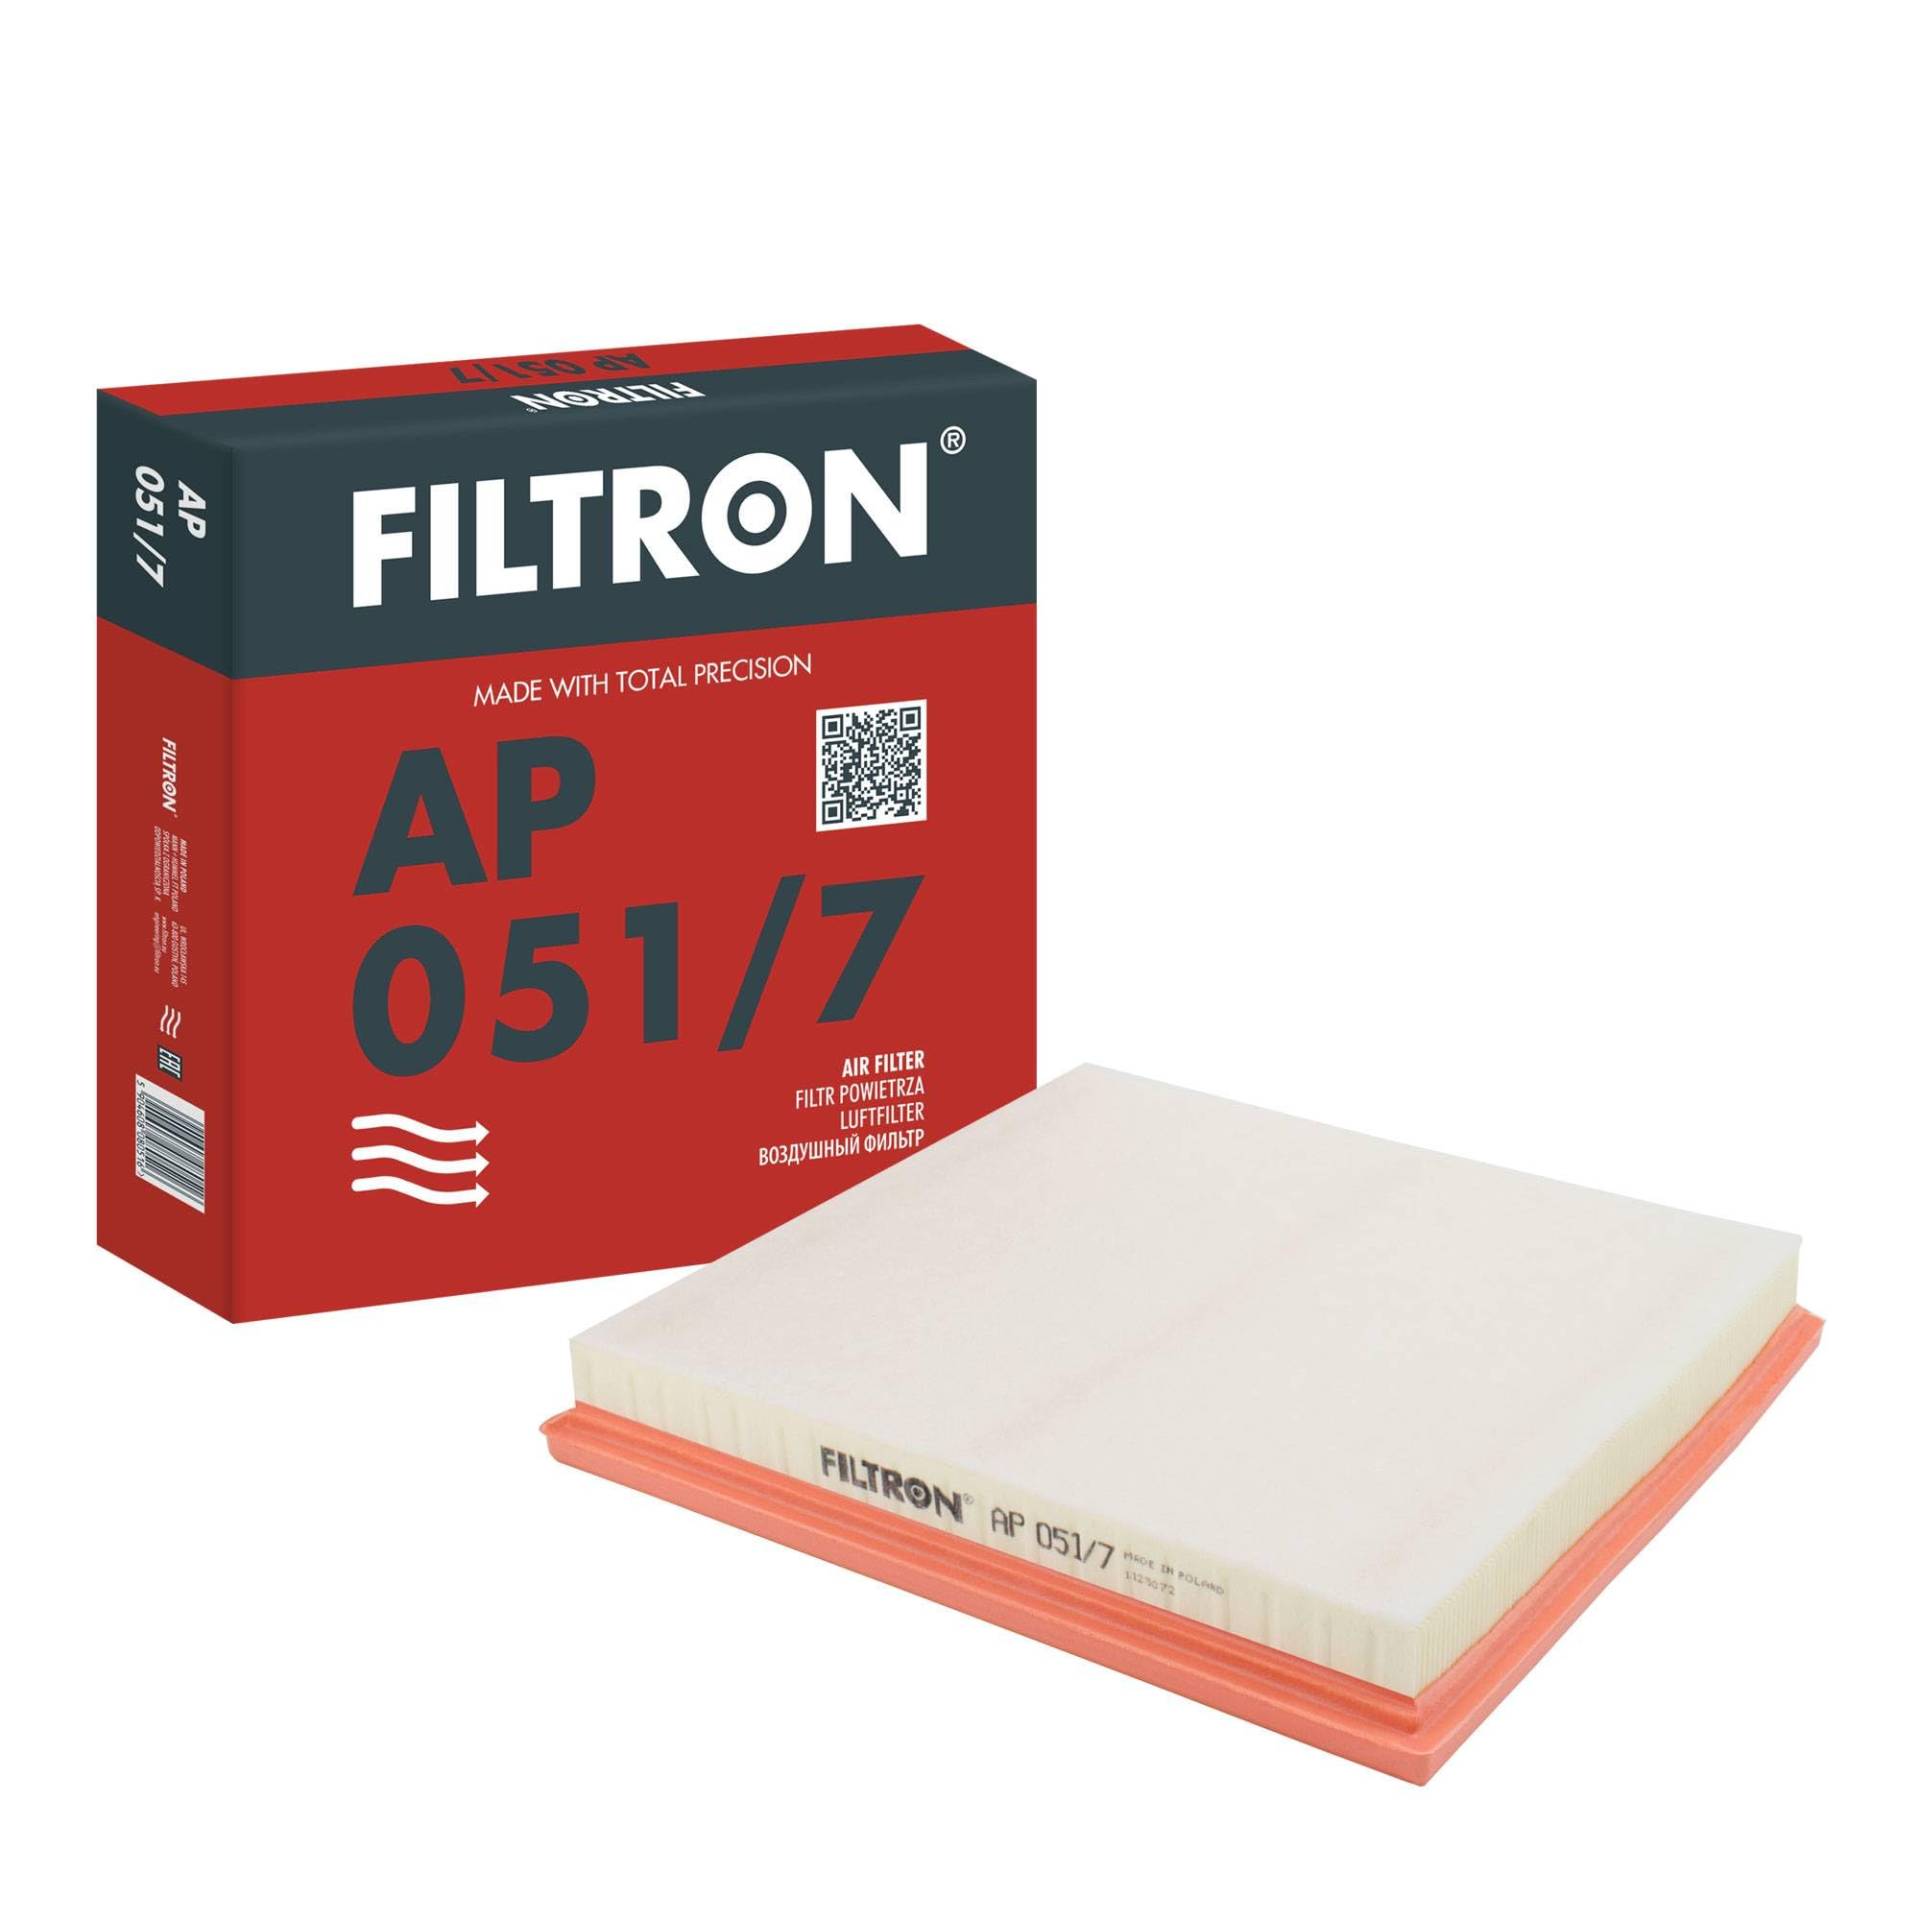 FILTRON AP051/7 Luftfilter von FILTRON